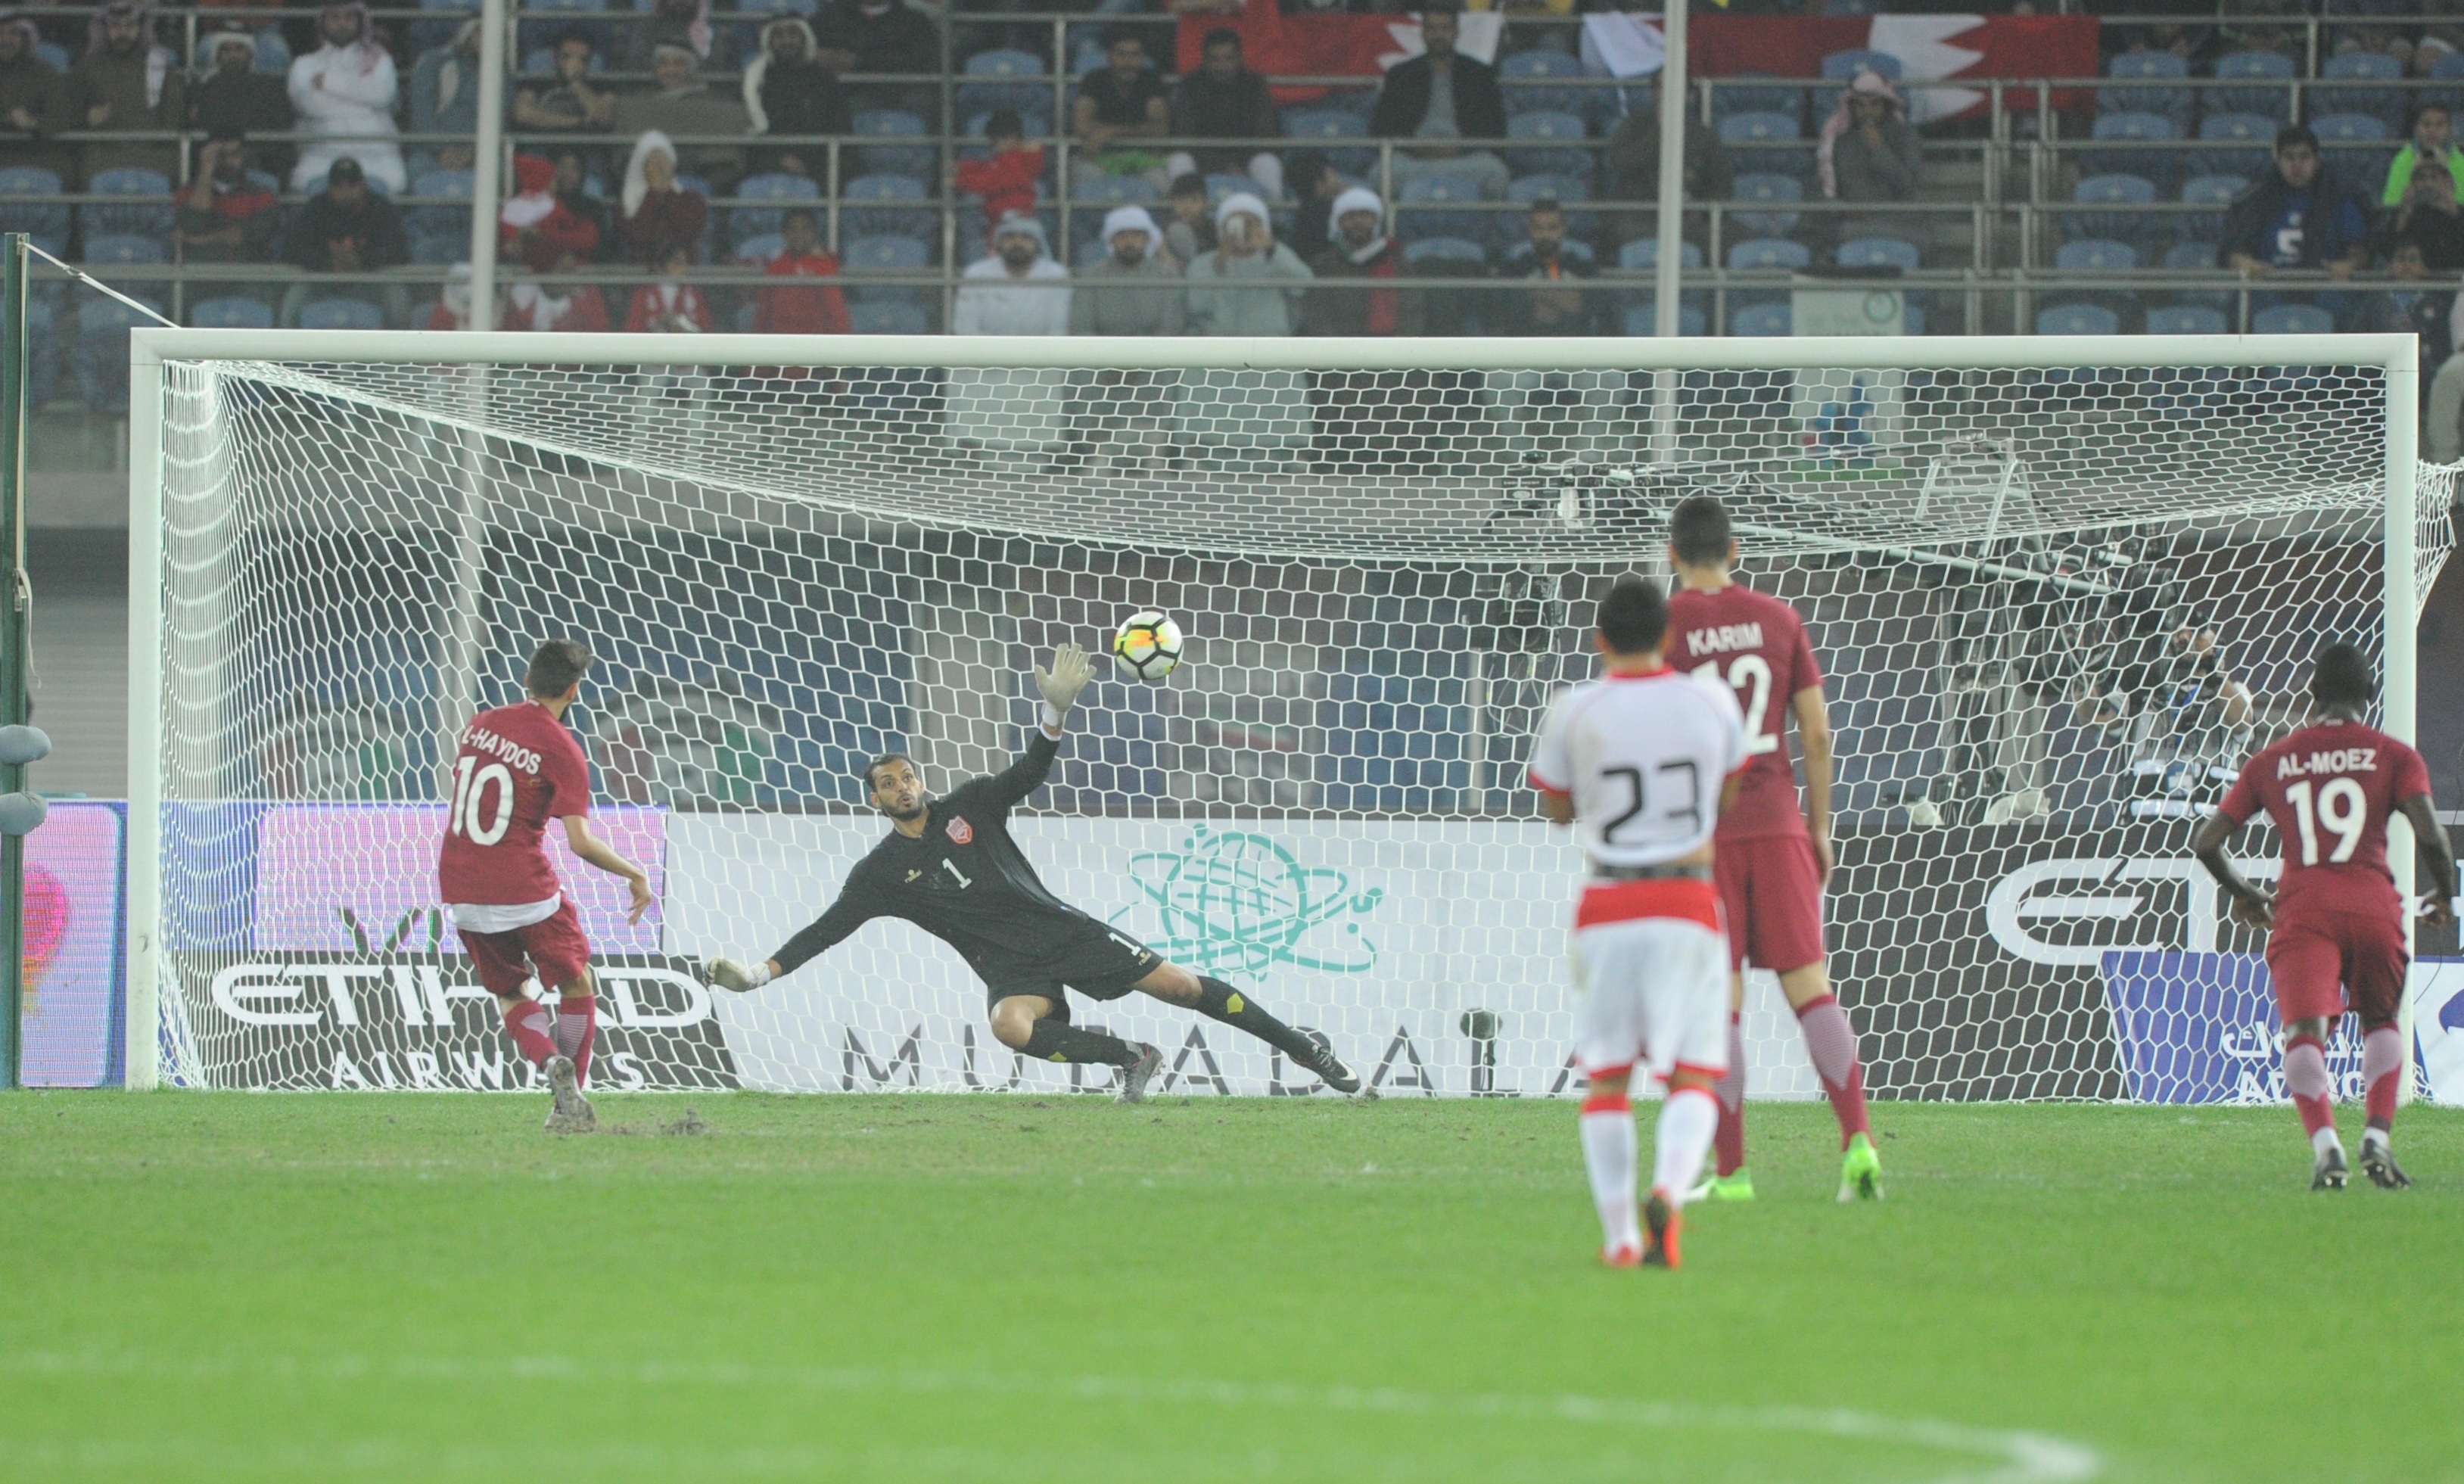 اللاعب القطري حسن الهيدوس يحرز الهدف الأول لمنتخب بلاده في مرمى المنتخب البحريني في مباراة الفريقين ضمن منافسات (خليجي 23)